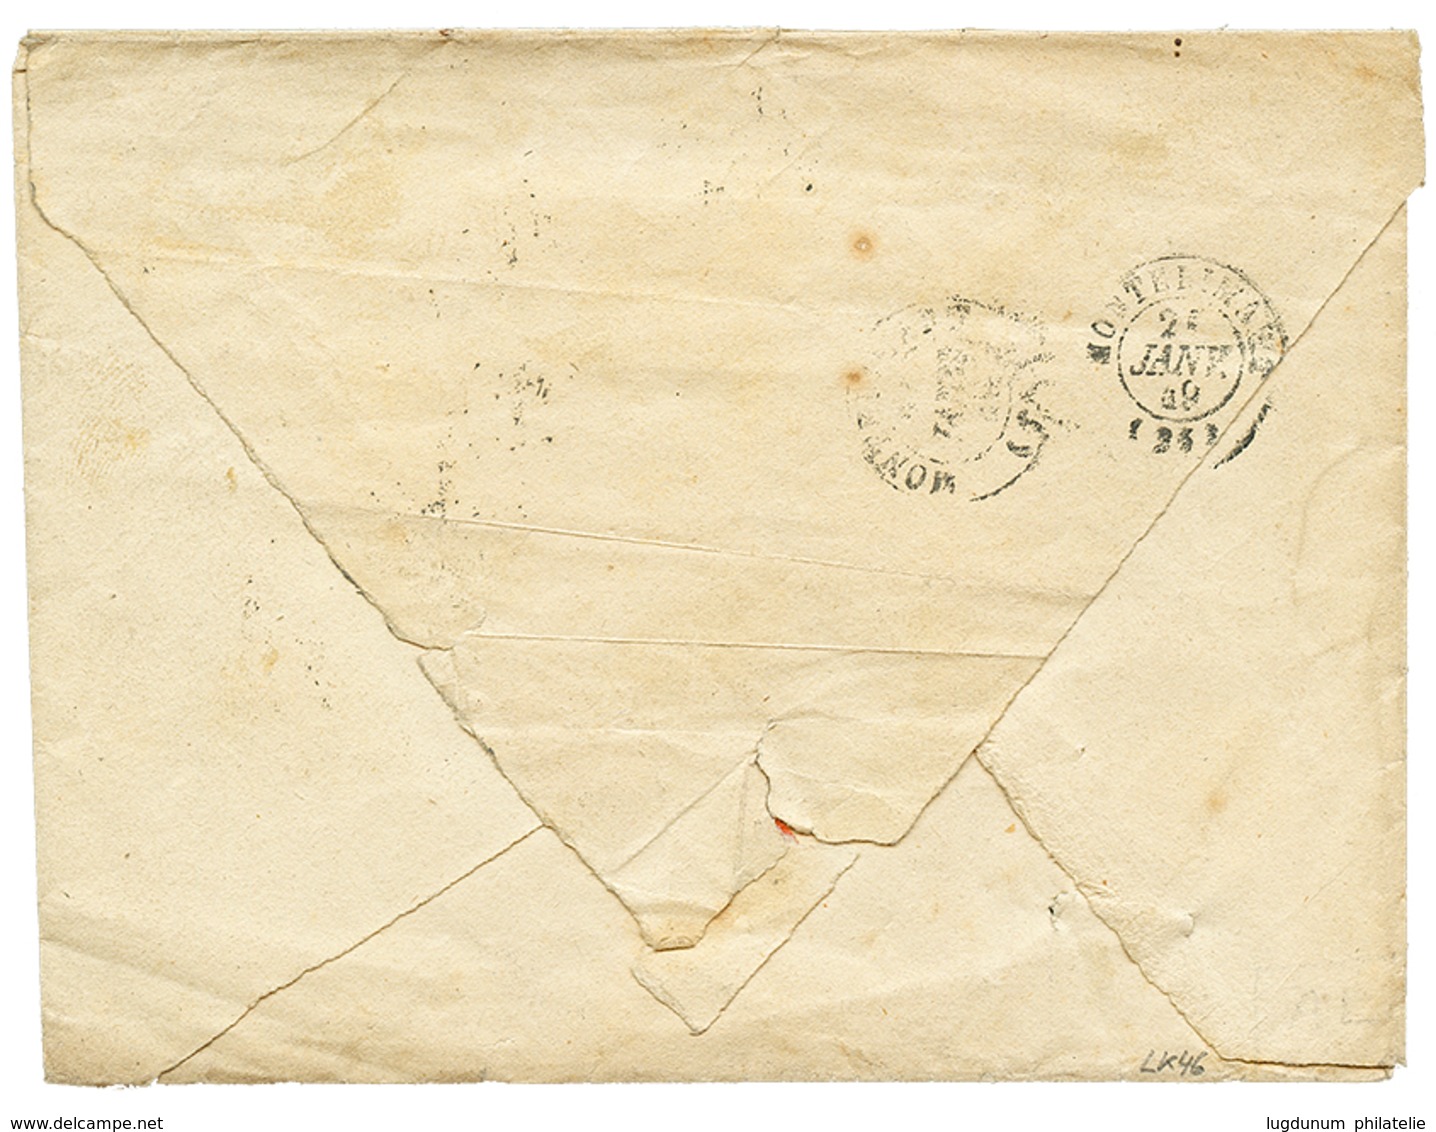 "JANVIER 1849 - Bande De 5" : 20c(n°3) Bande De 5 (pd) Bord De Feuille Obl. Grille + T.14 LYON 20 JANV. 1849 Sur Envelop - 1849-1850 Ceres